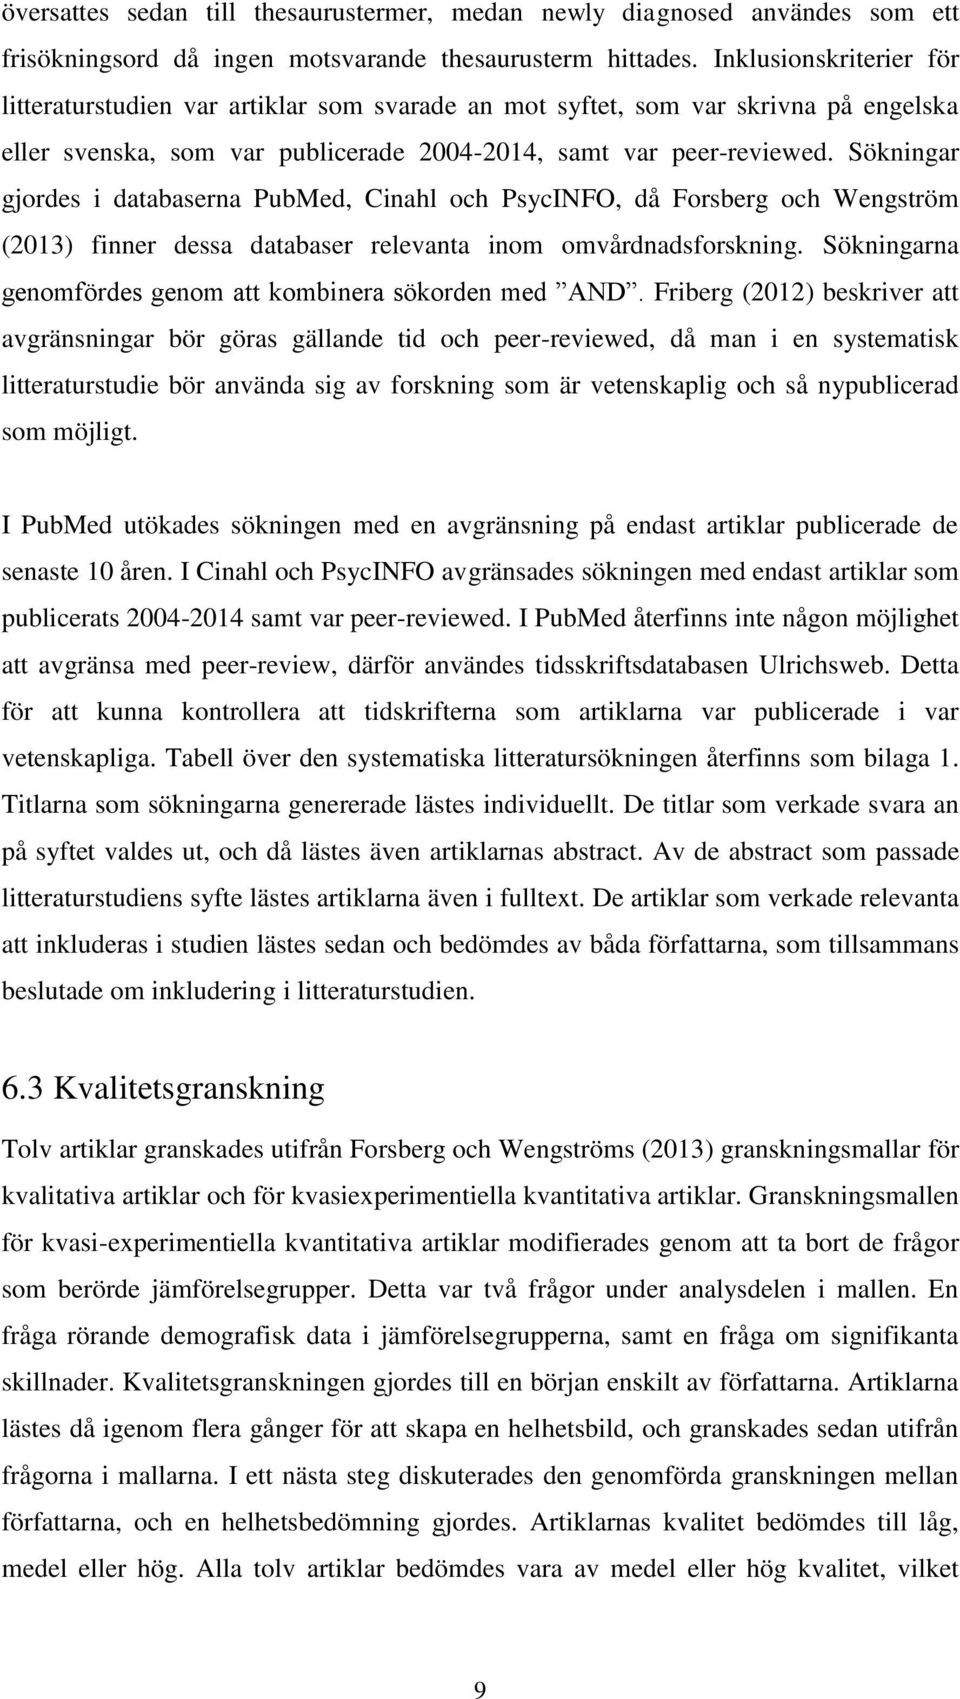 Sökningar gjordes i databaserna PubMed, Cinahl och PsycINFO, då Forsberg och Wengström (2013) finner dessa databaser relevanta inom omvårdnadsforskning.